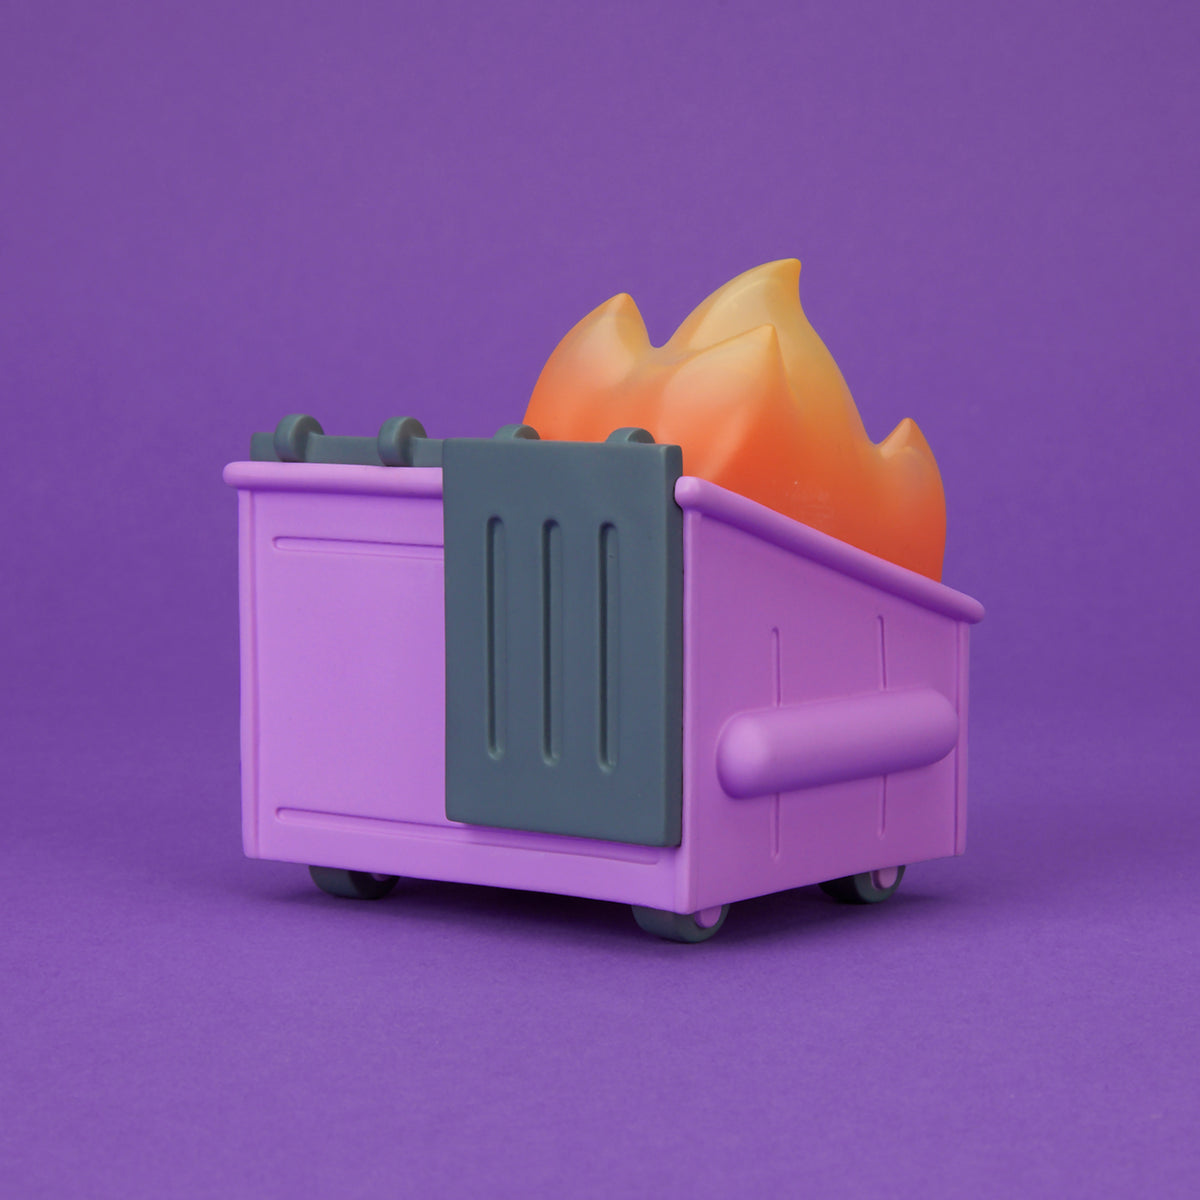 Dumpster Fire - Cough Syrup Purple Vinyl Figure